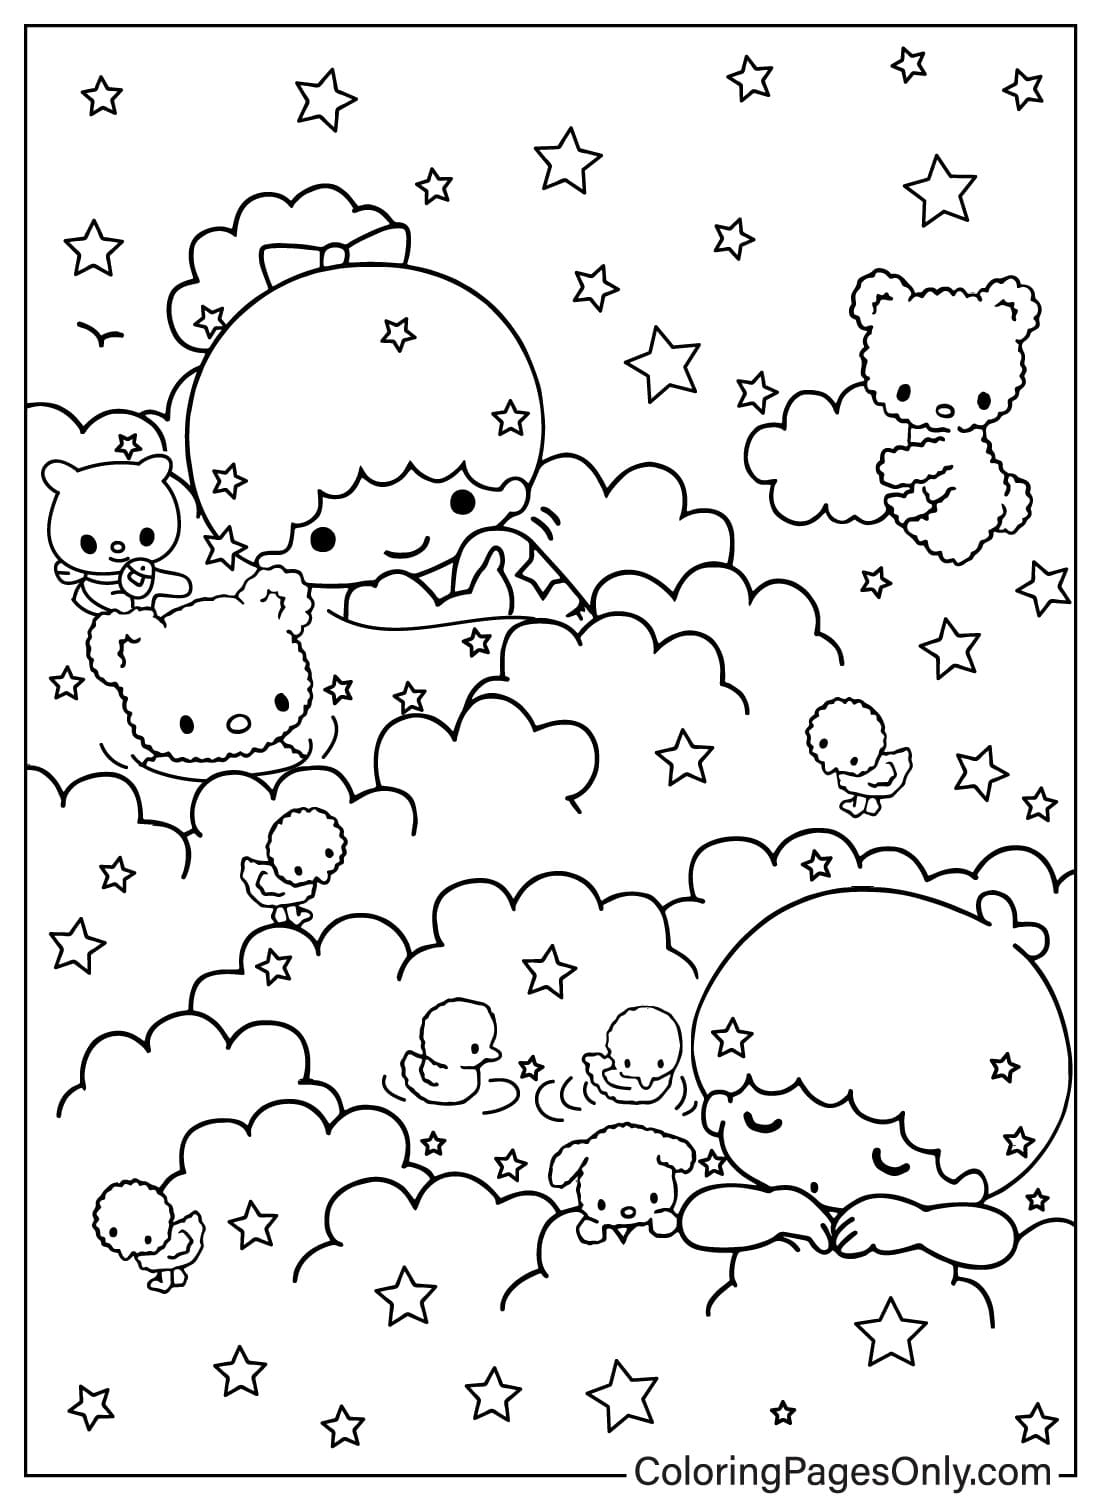 Página para colorear gratis de Little Twin Stars de Little Twin Stars